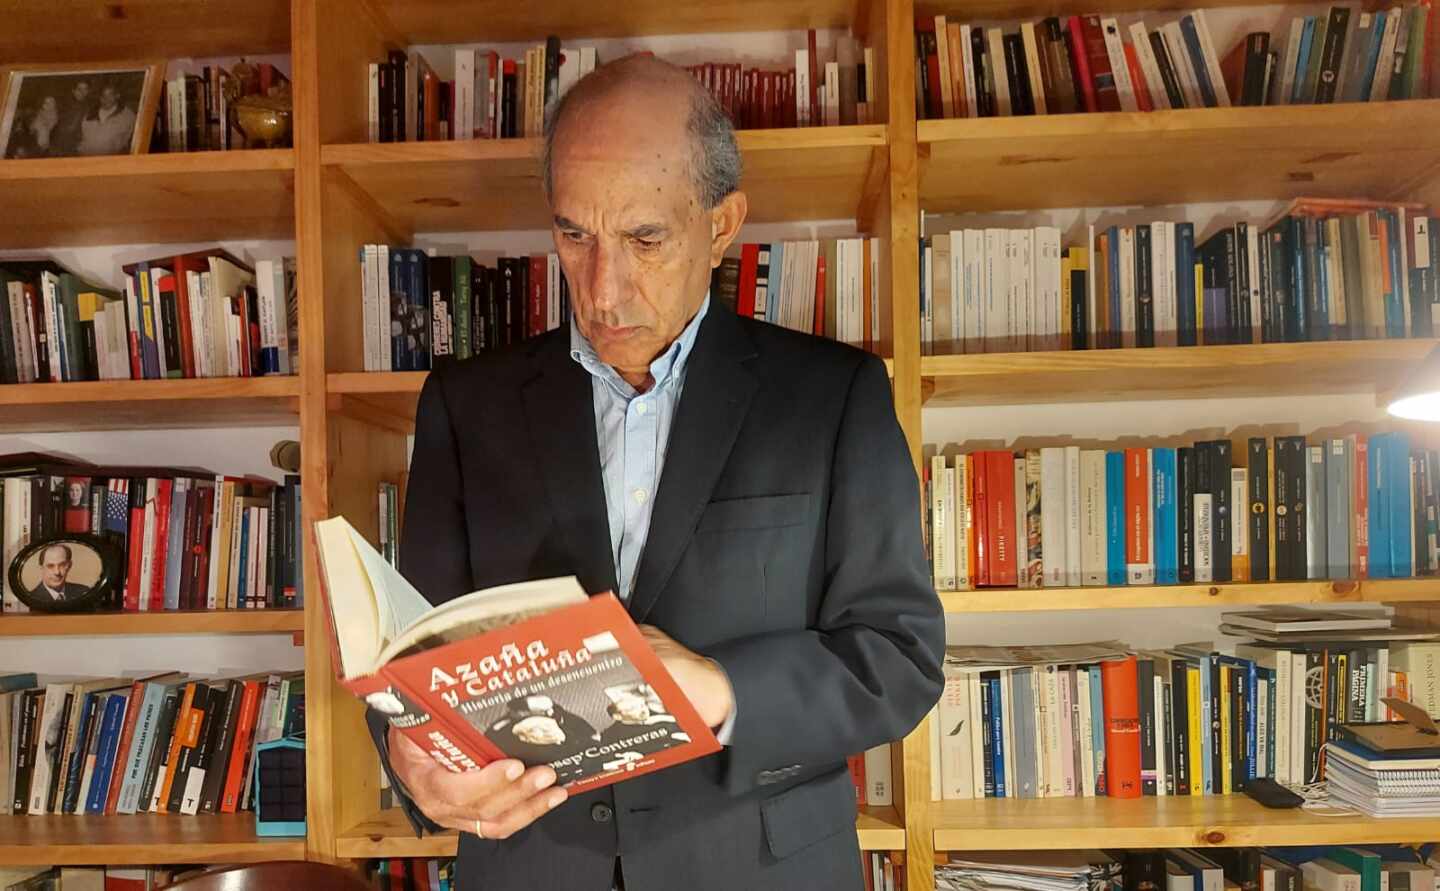 El ex dirigente socialista posa en su biblioteca con un libro